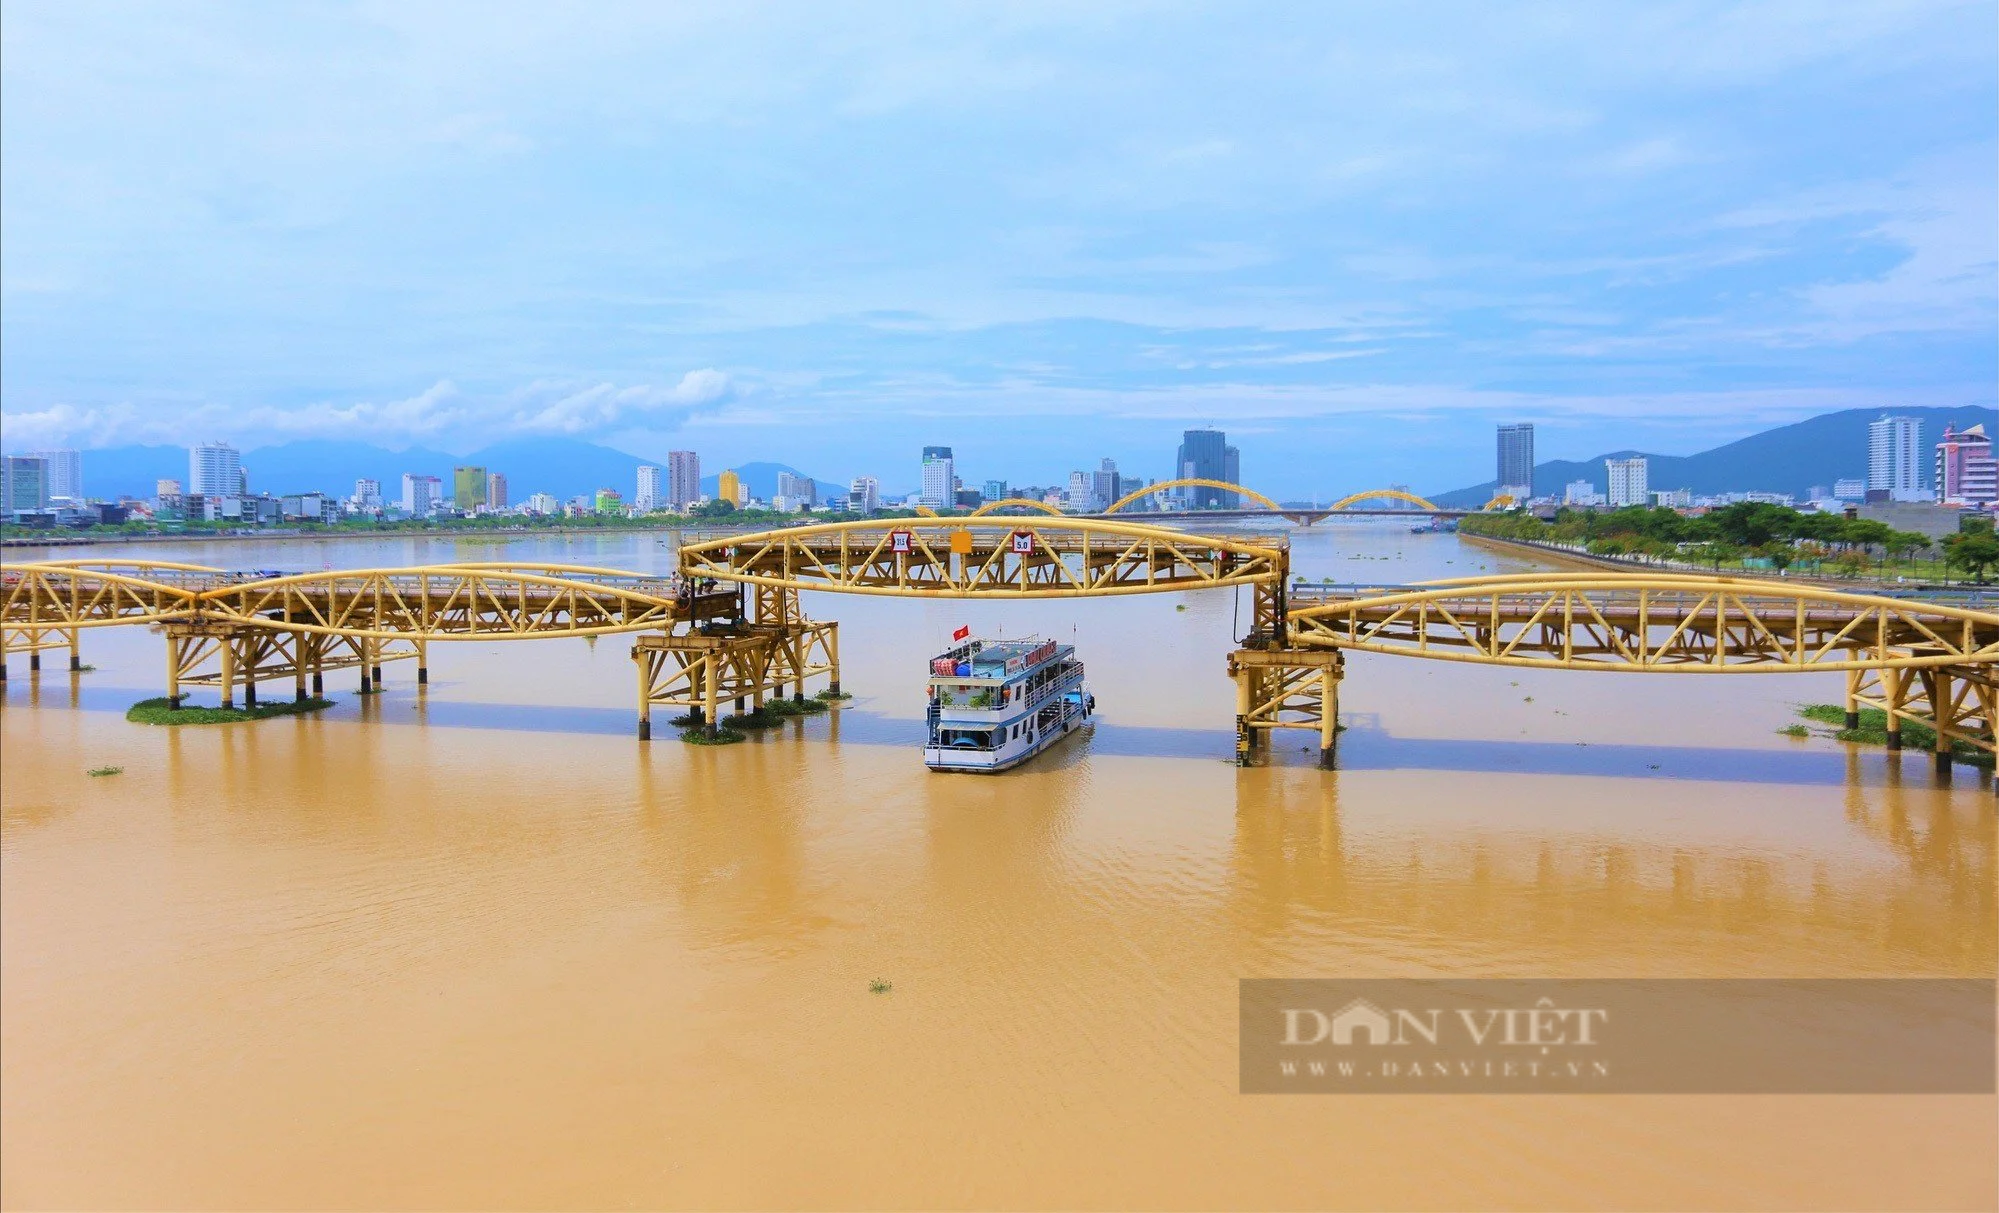 Cây cầu lâu đời nhất Đà Nẵng sẽ trở thành điểm du lịch đêm - Ảnh 6.